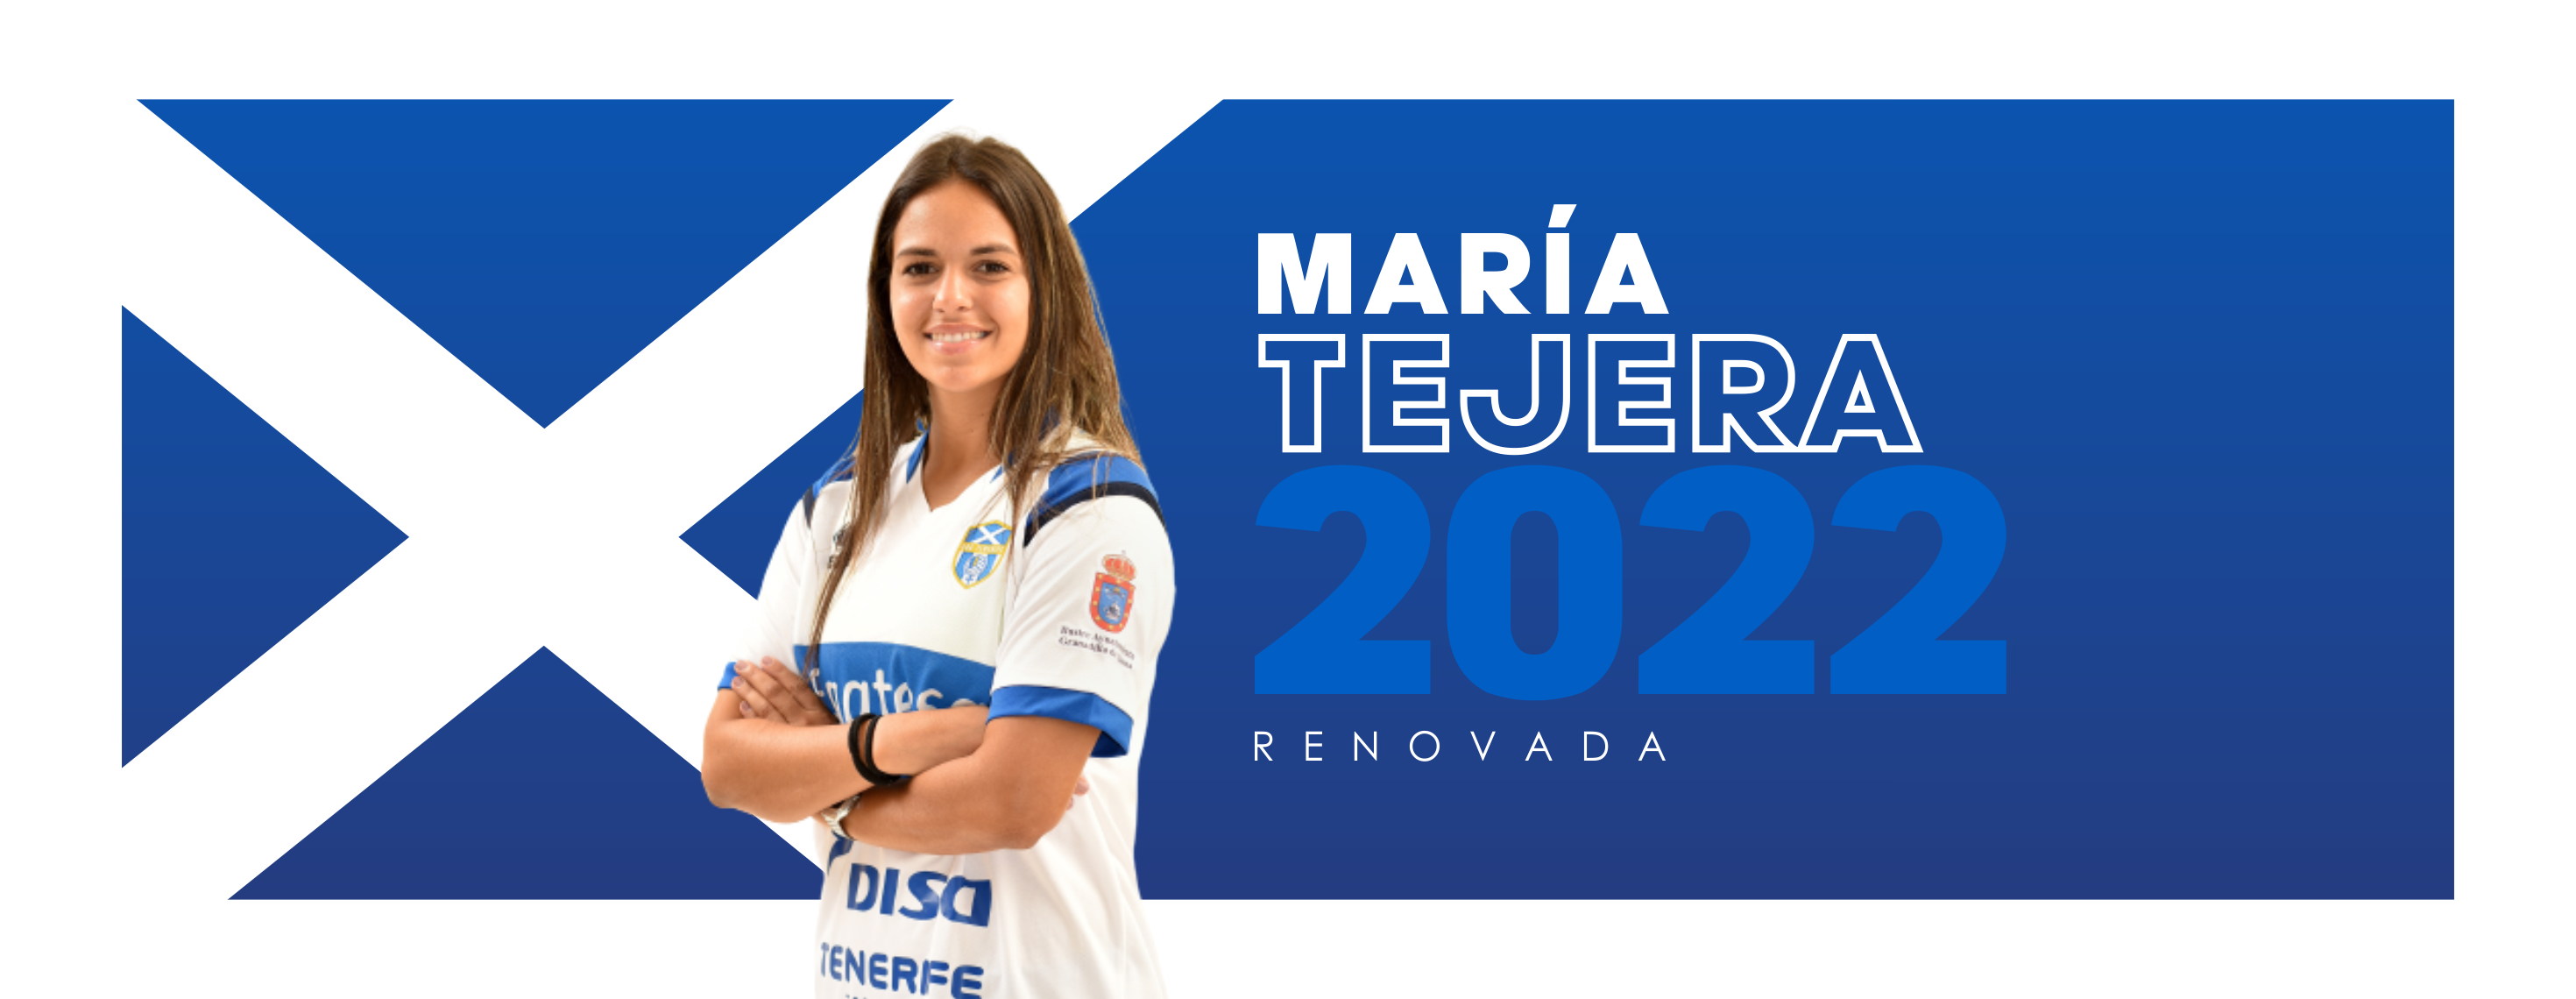 La grancanaria María Tejera renueva con la UDG Tenerife